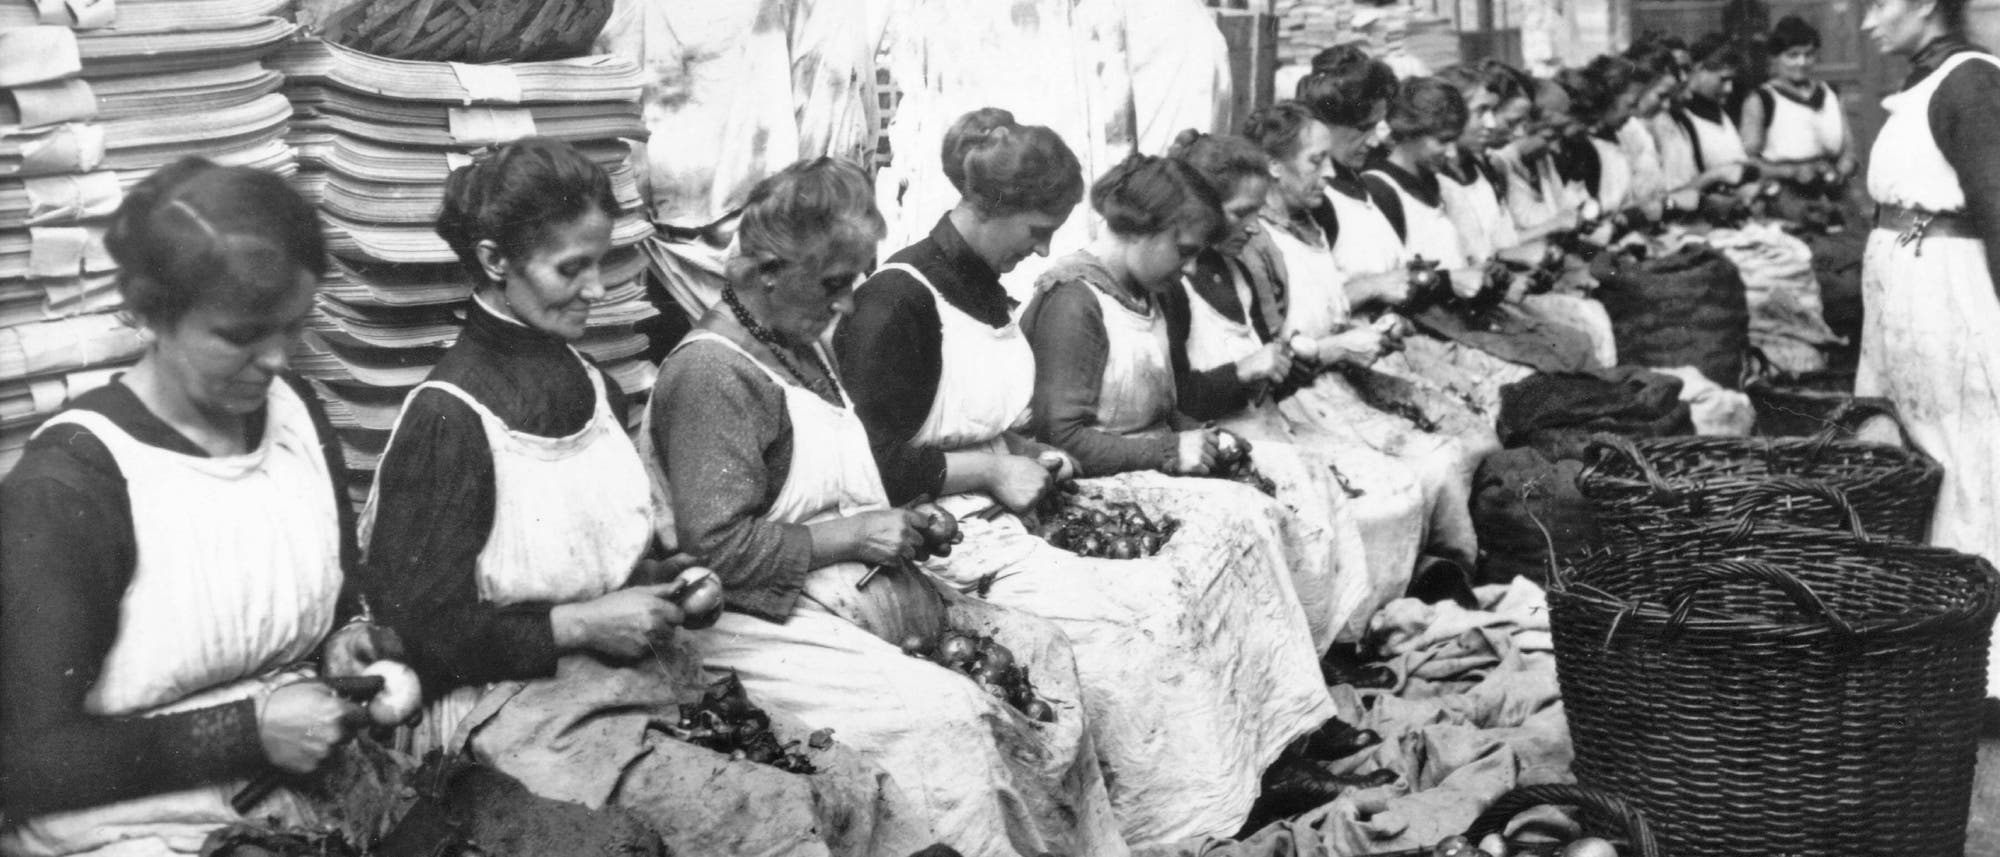 Frauen, die in einer Konservenfabrik arbeiten, schälen massenhaft Zwiebeln. Das Bild entstand während des Ersten Weltkriegs.